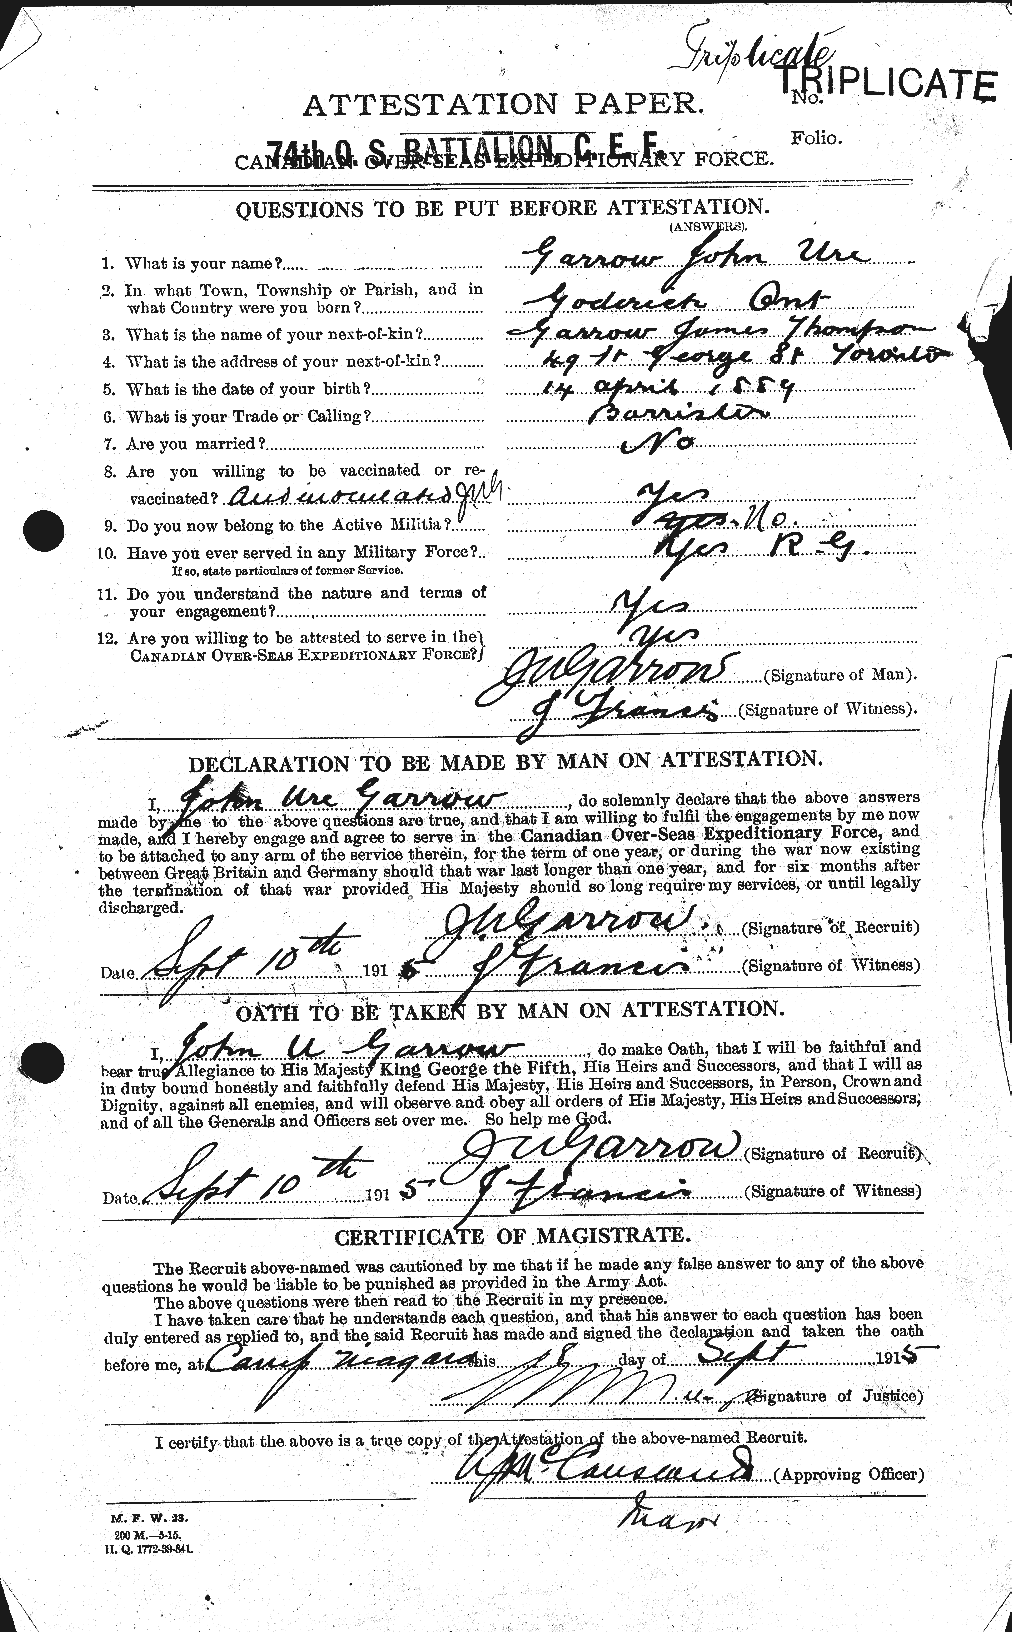 Dossiers du Personnel de la Première Guerre mondiale - CEC 343476a